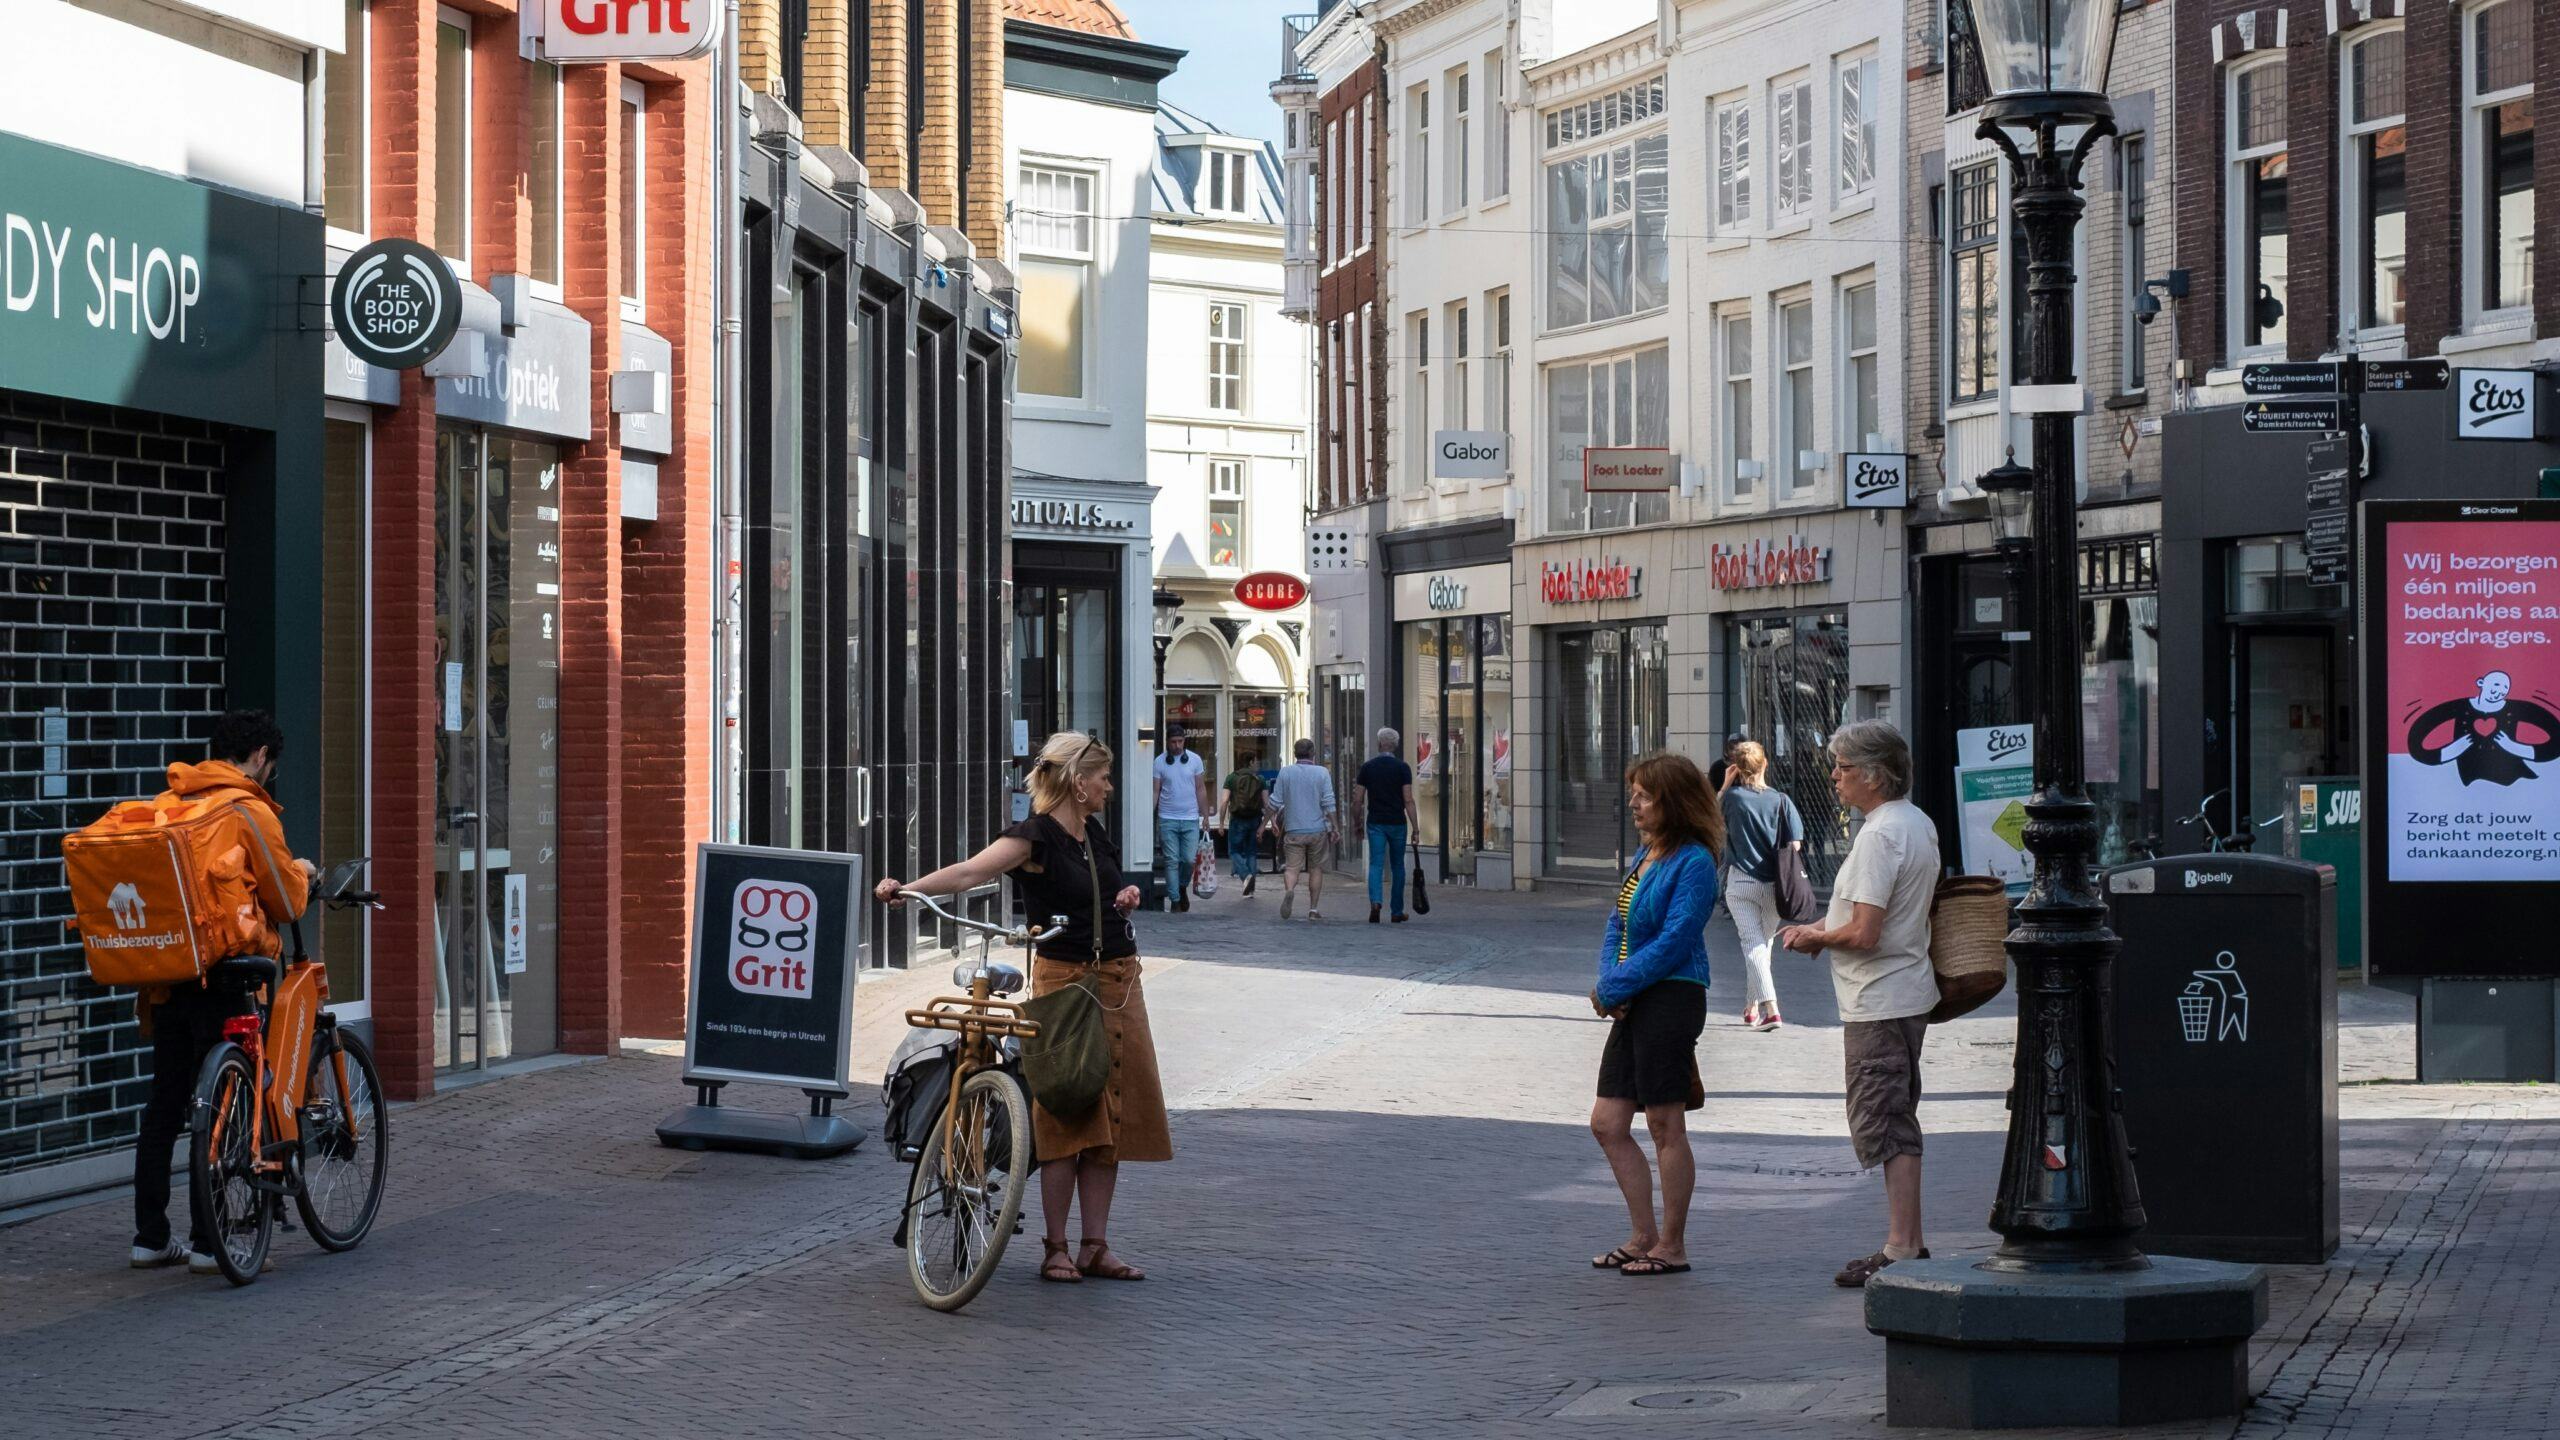 Retailcijfers Nederland: daling in verkooppunten en totale oppervlakte